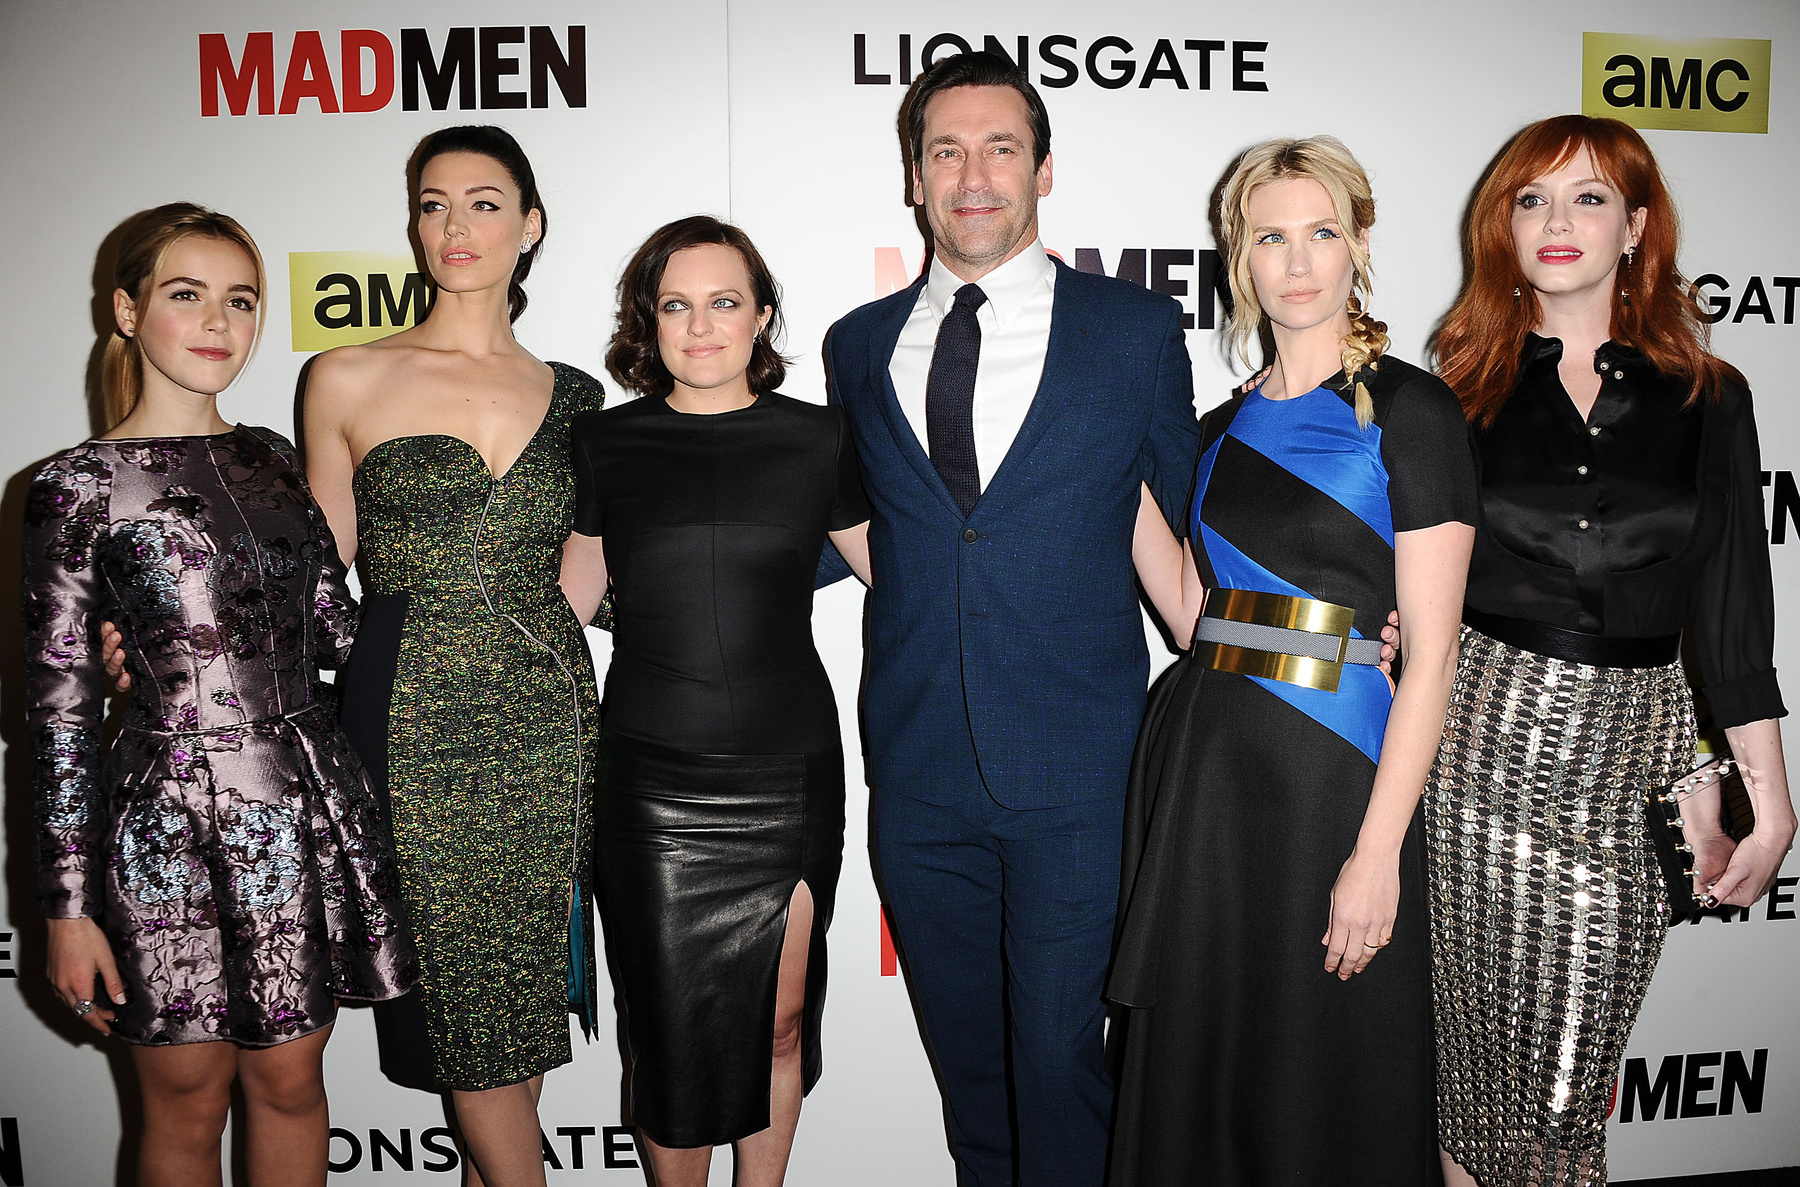 A Mad Men hetedik évadjának hat főszereplője: Kiernan Shipka, Jessica Paré, Elisabeth Moss, Jon Hamm, January Jones és Christina Hendricks. Közülük csak Jessica Paré érkezett menet közben, a többiek mind kezdettől fogva szerepeltek a sorozatban